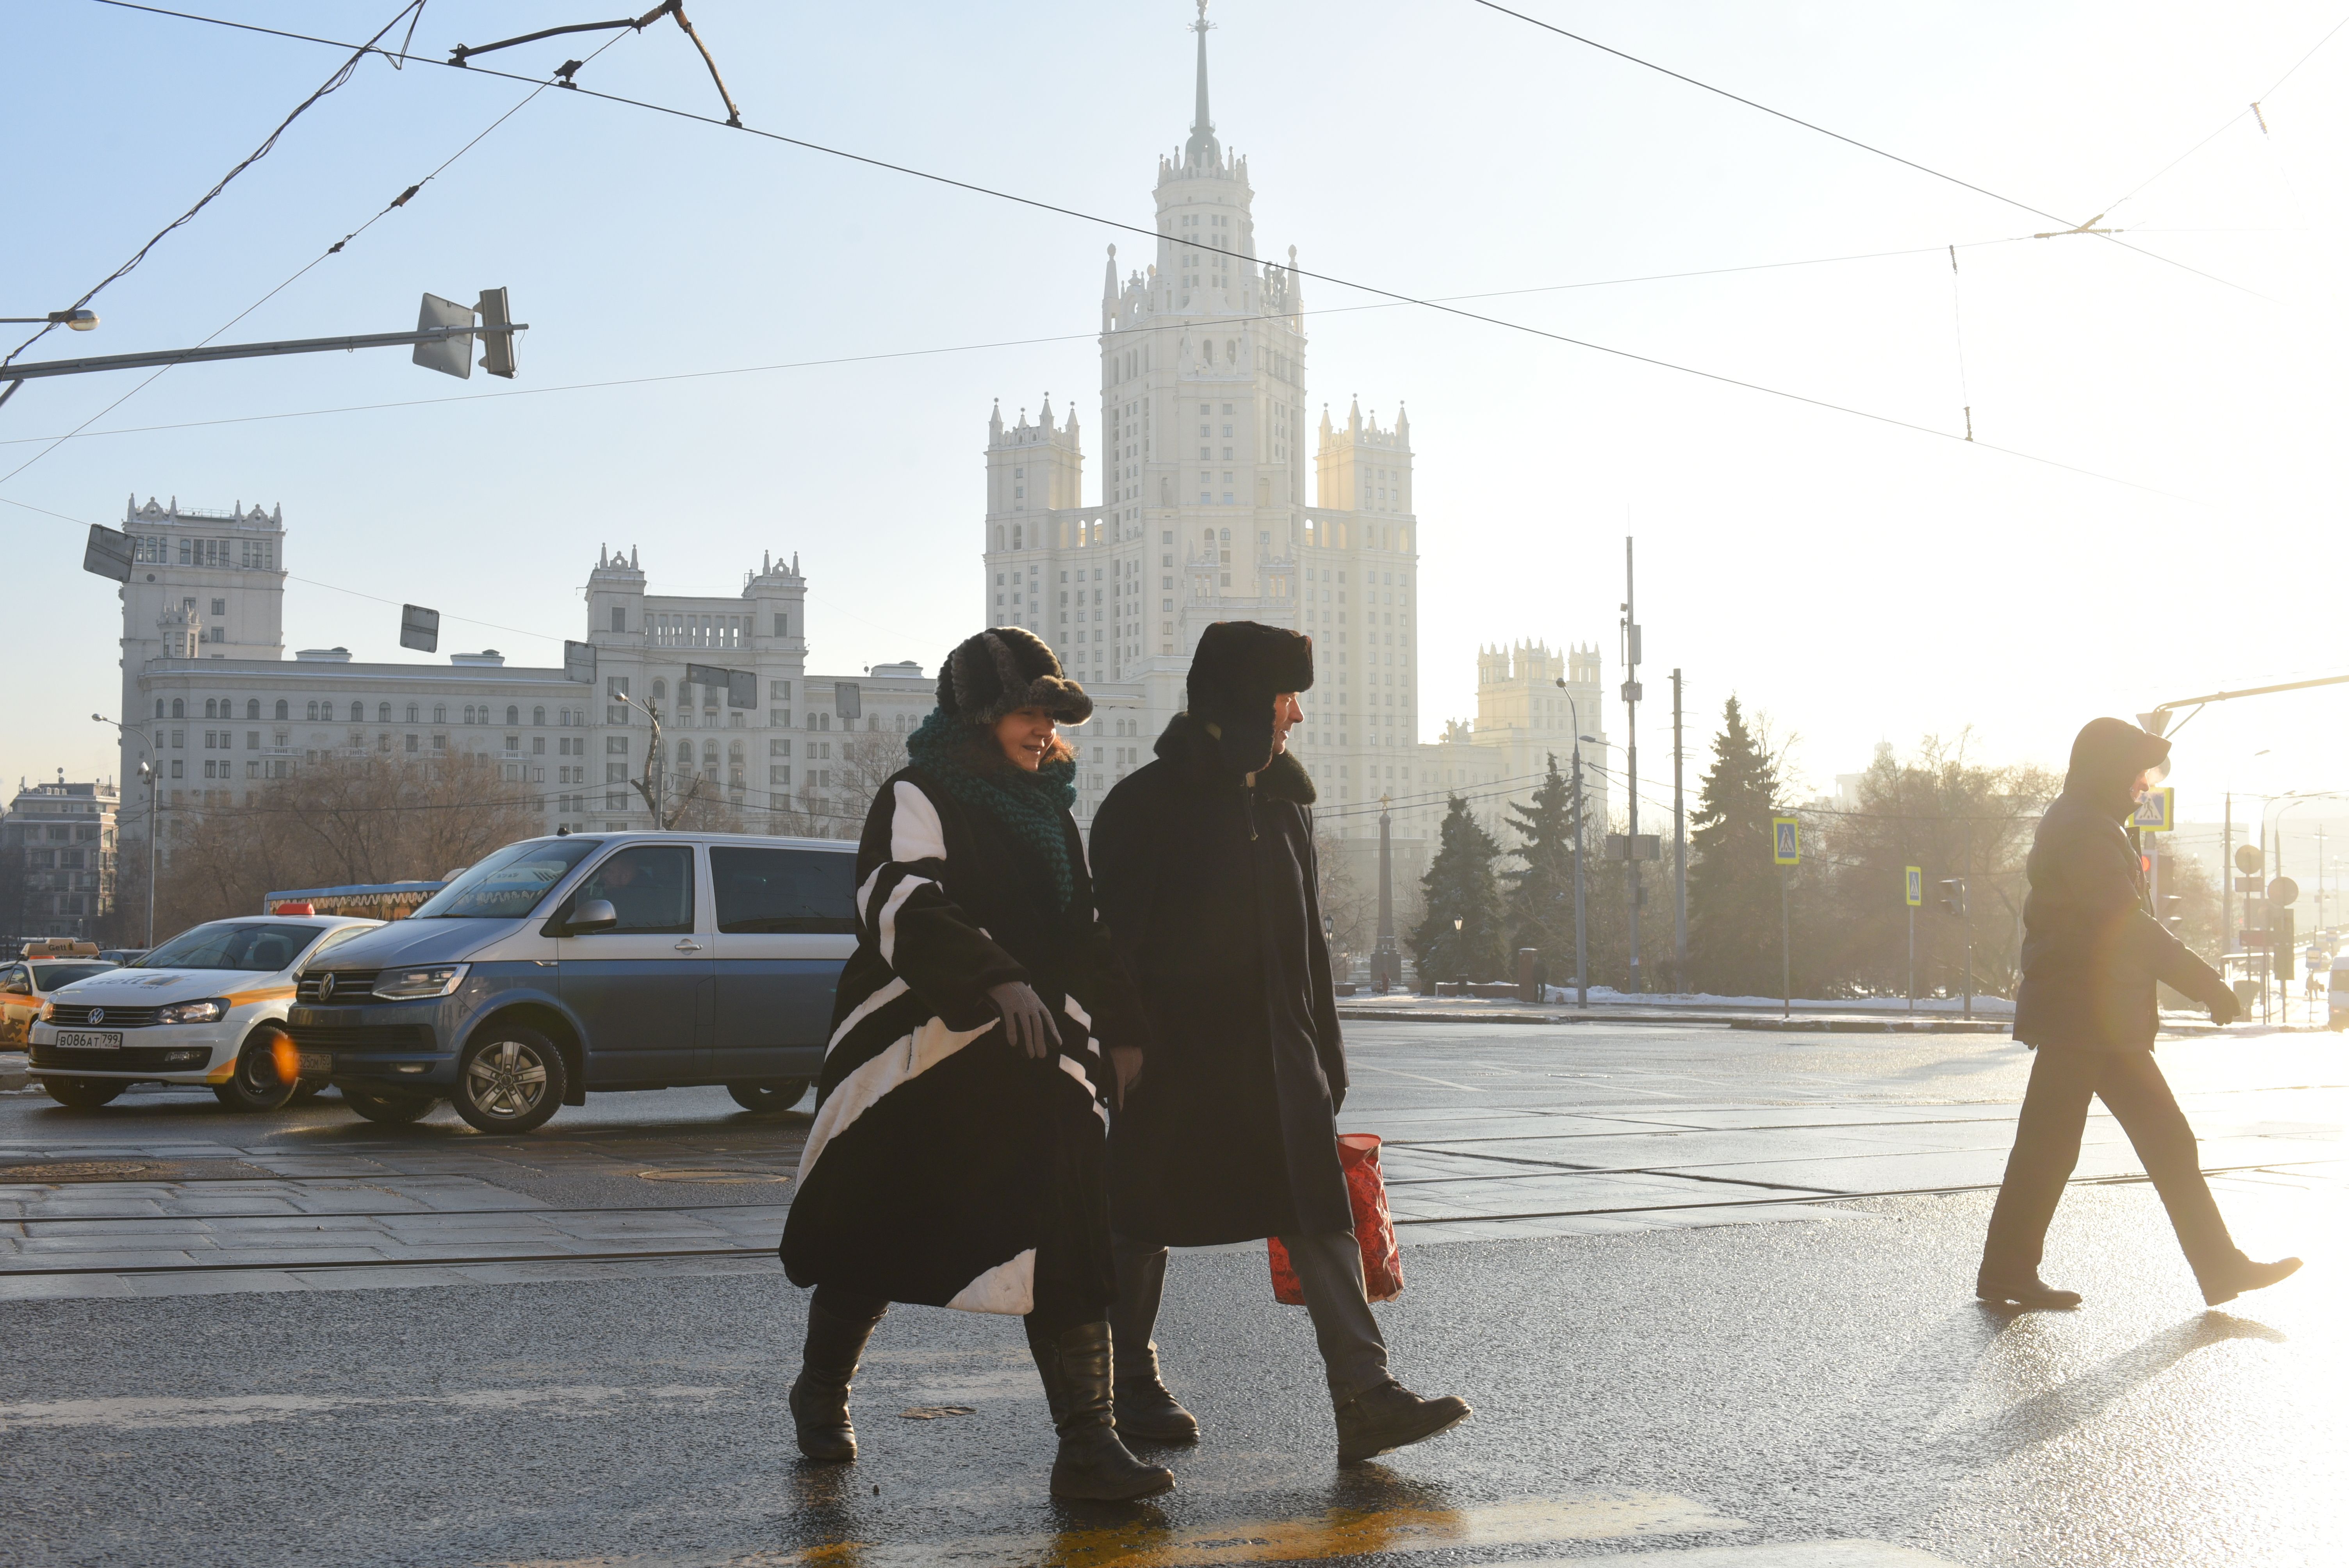 Выходные дни принесут потепление в столицу. Фото: архив, «Вечерняя Москва»